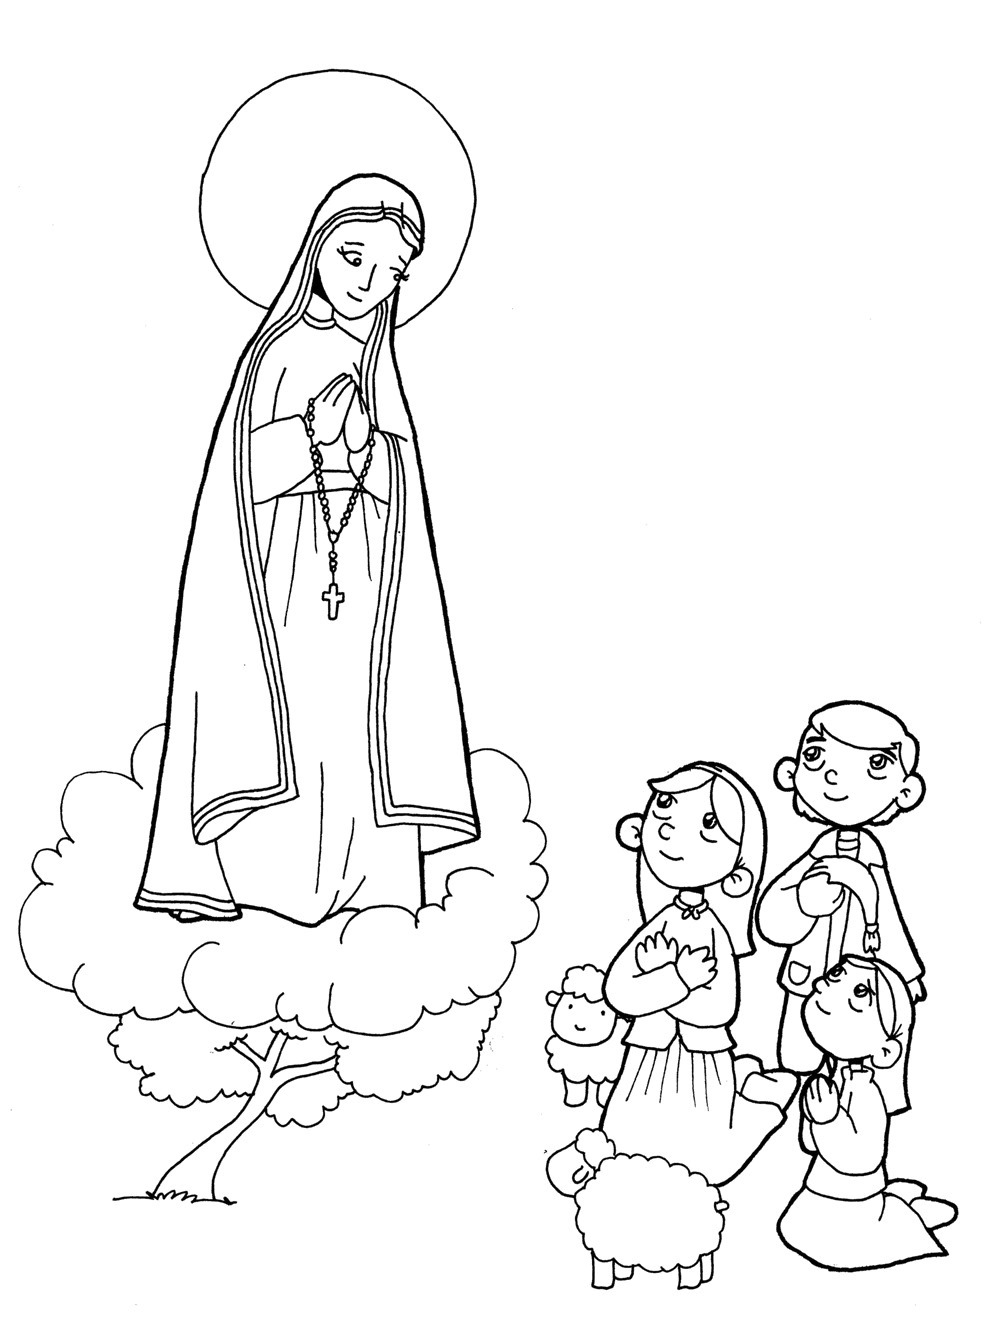 La Madonna prega assieme ai bambini disegno da colorare